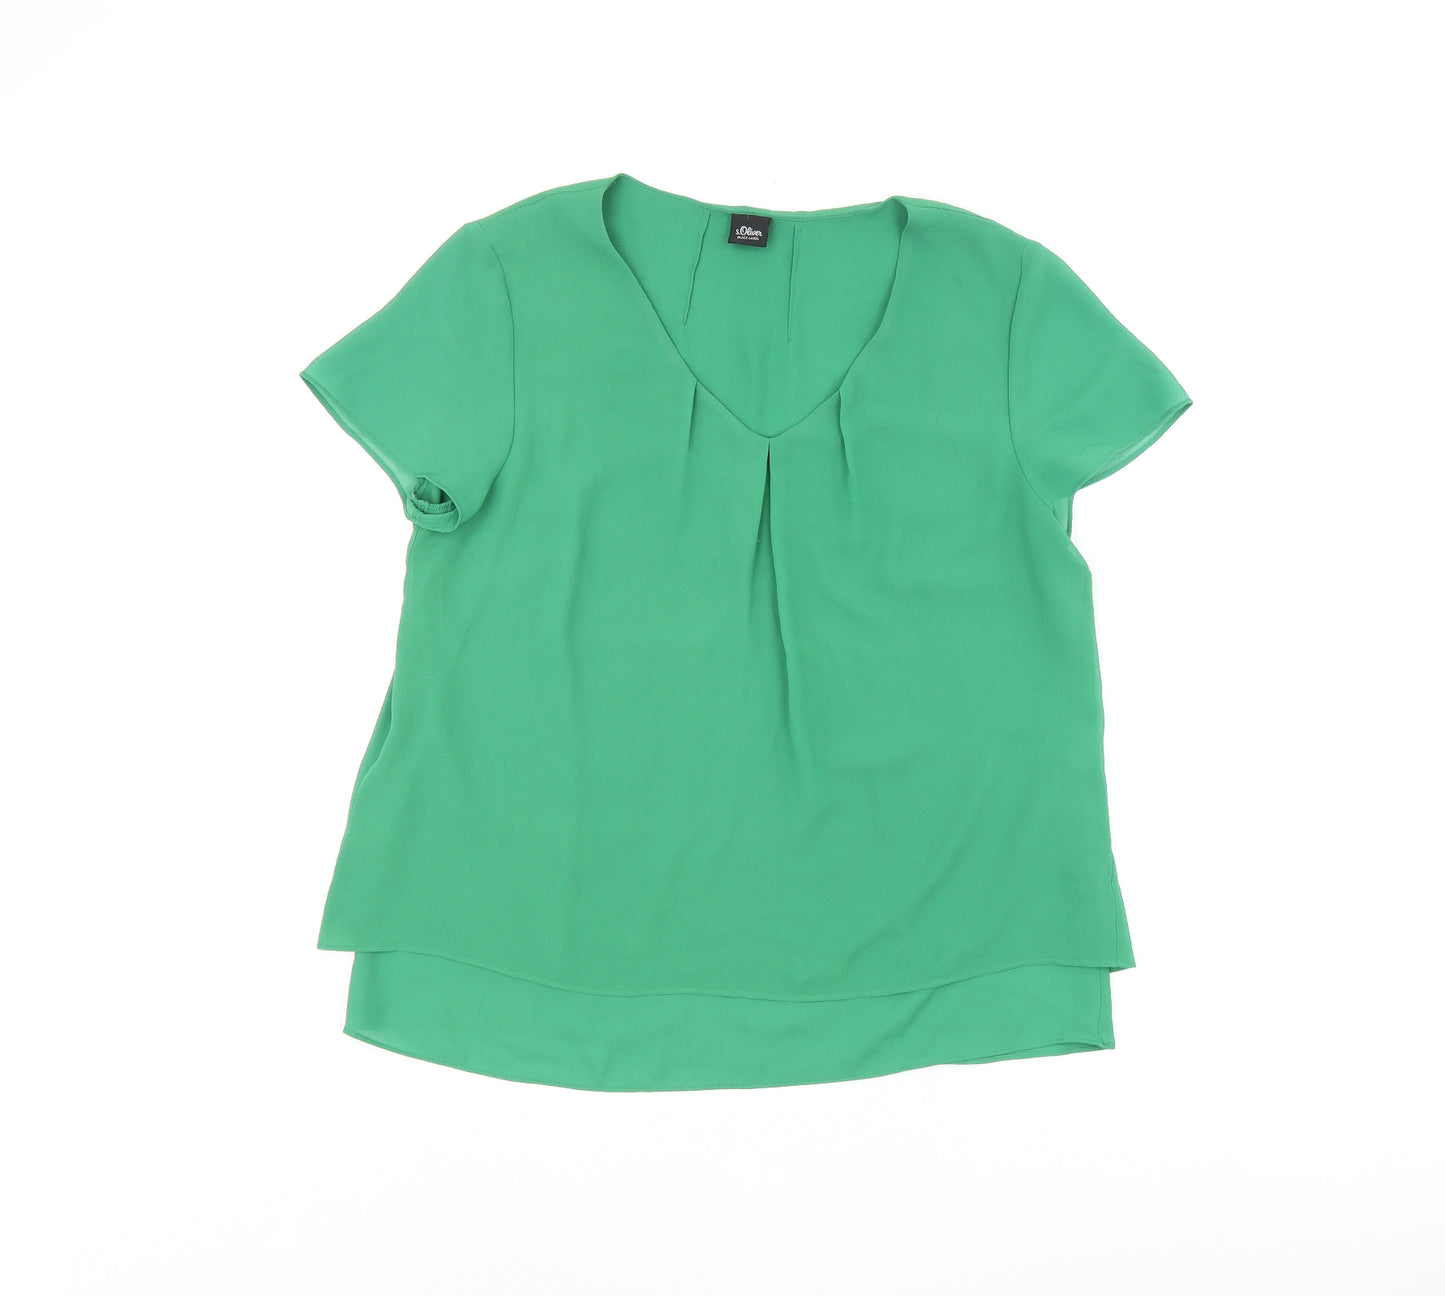 s.Oliver Womens Green Polyester Basic Blouse Size 12 V-Neck